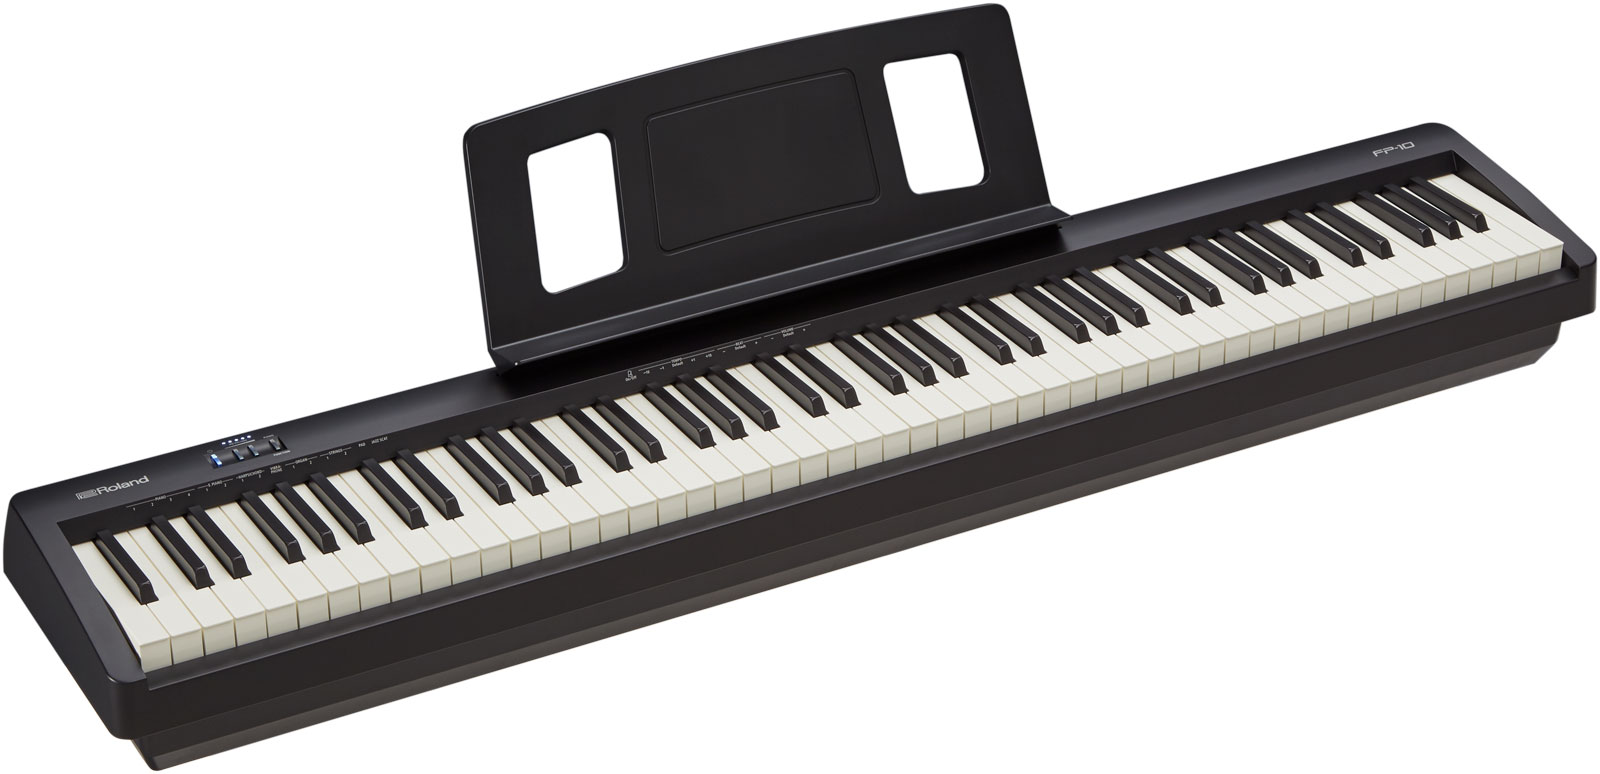 (Online)เปียโนไฟฟ้าRoland FP-10 พร้อมคอร์สเรียนเปียโนออนไลน์ 365วัน เรียนกับครูดนตรี 100นาที 12 ครั้ง